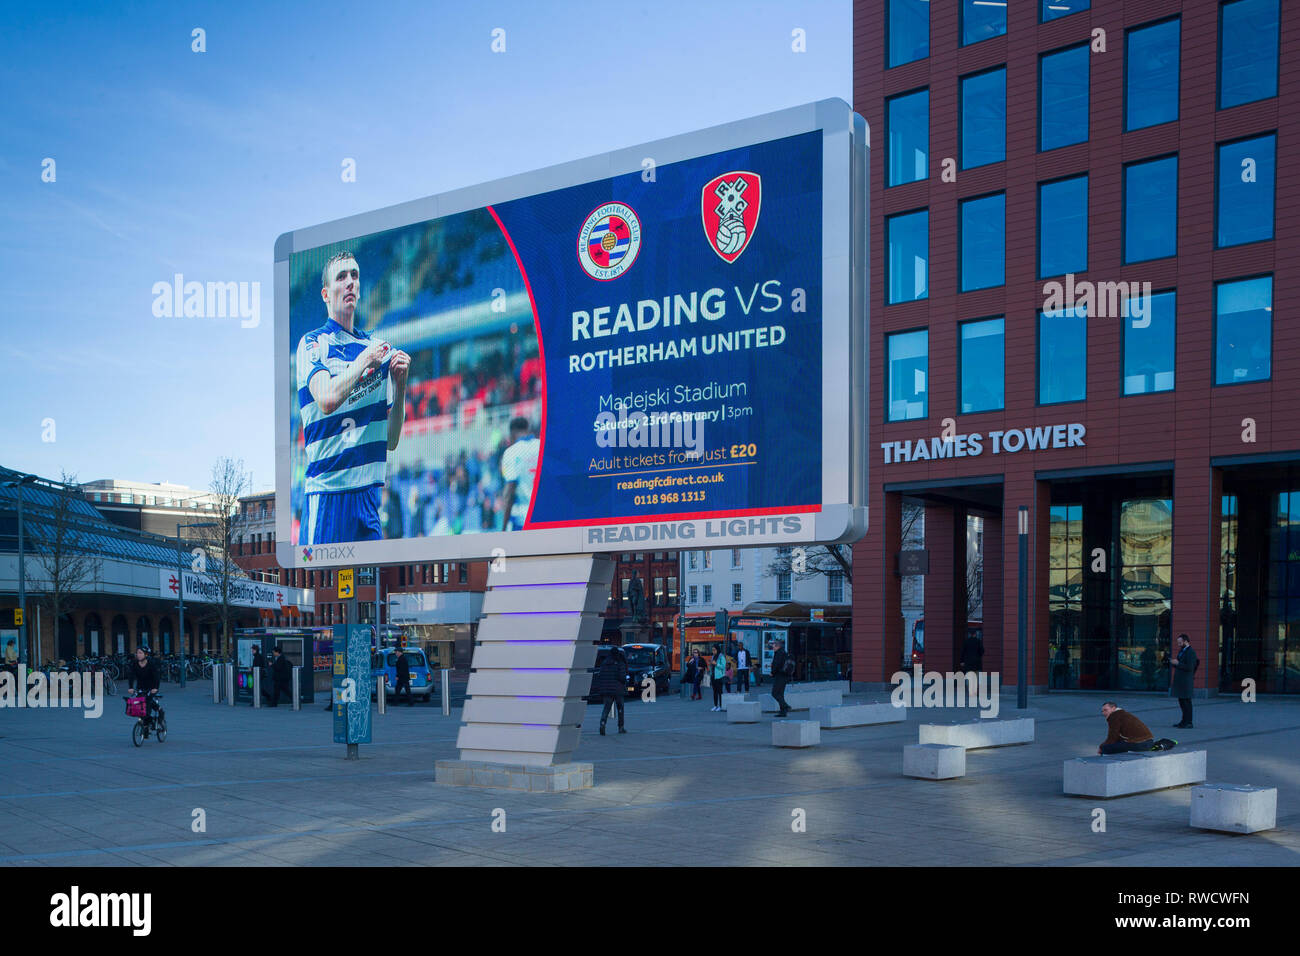 "Luci di lettura", il nuovo gigante LED illuminato affissioni al di fuori della stazione di lettura, Berkshire, qui pubblicità la prossima partita in casa per la lettura di calcio Foto Stock